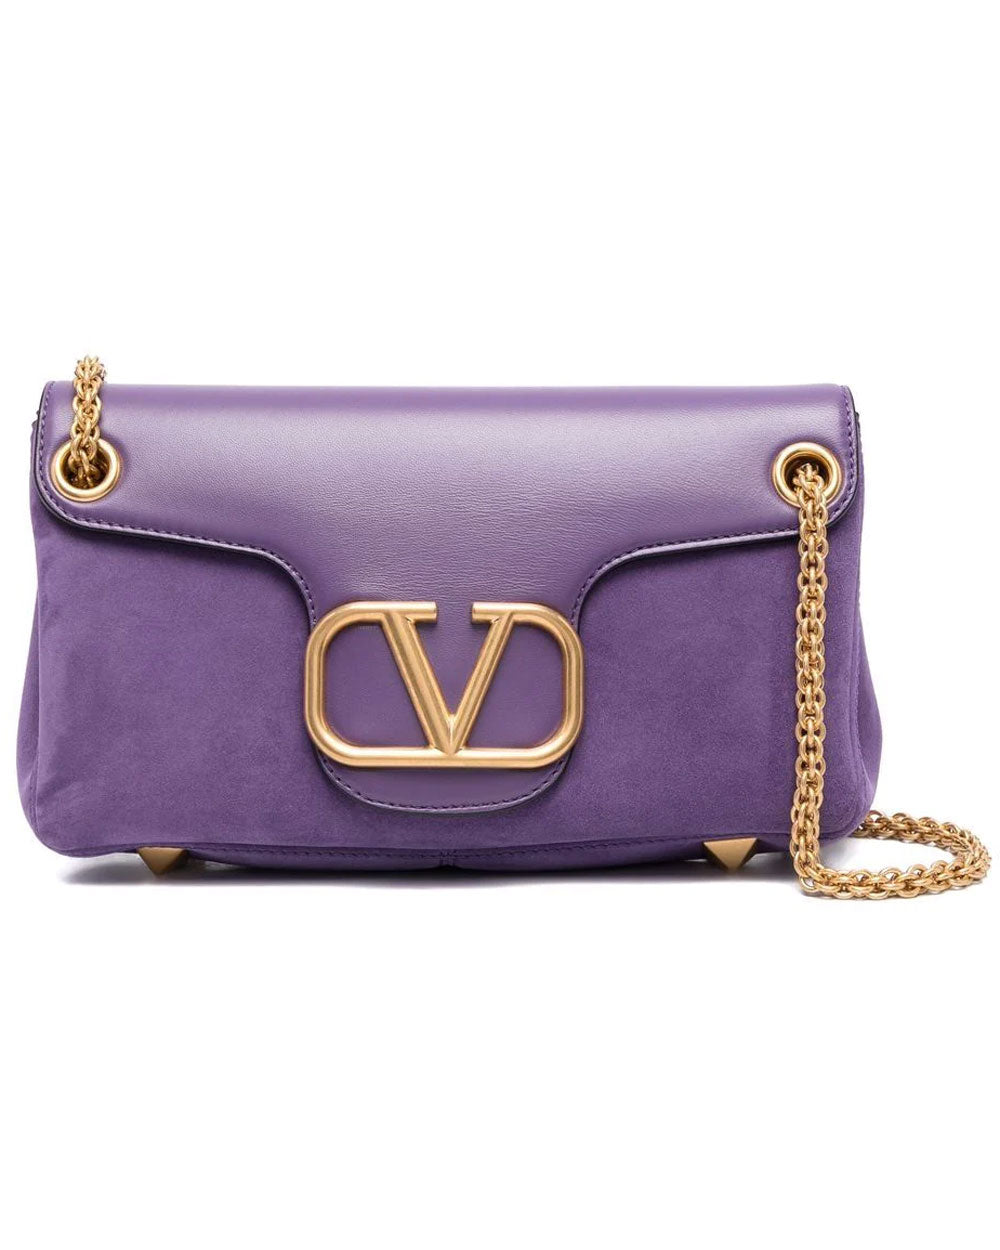 VLOGO Shoulder Bag in Indian Violet